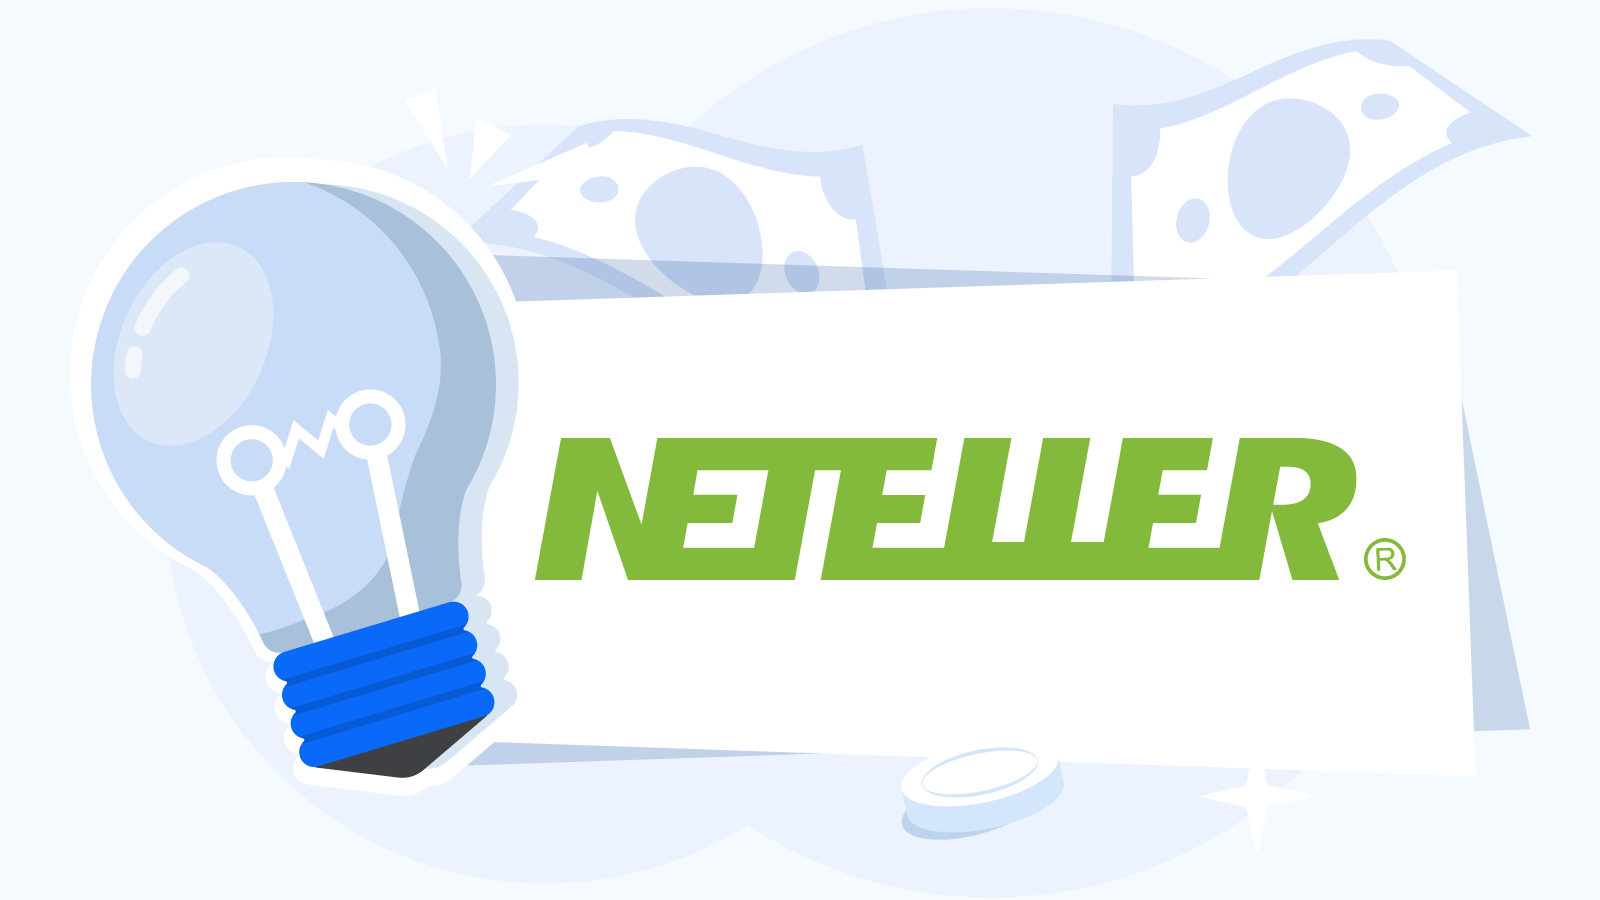 Overview-of-Neteller-Provider-Background